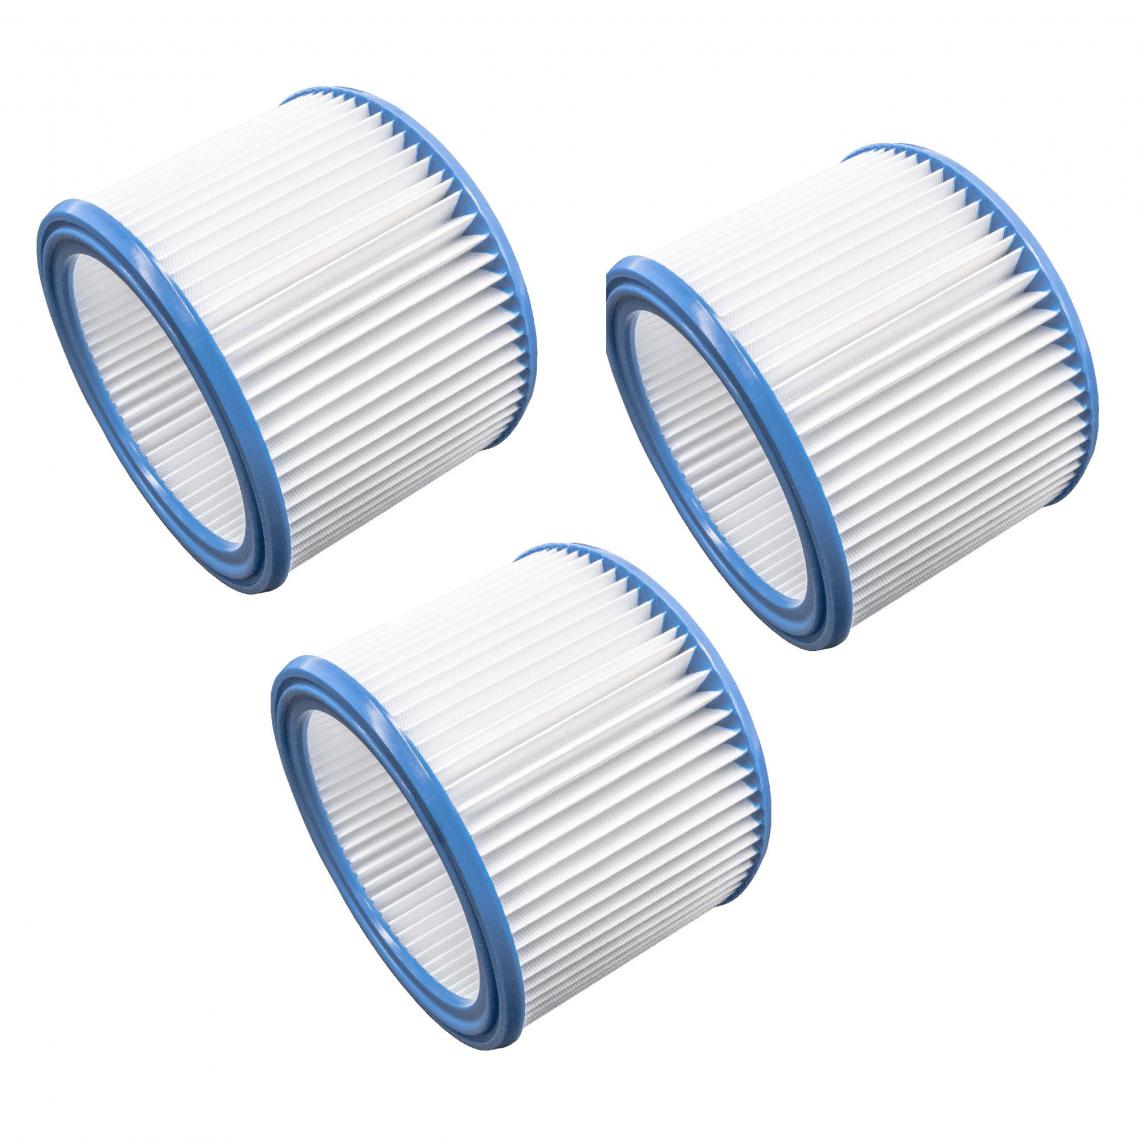 Vhbw - vhbw Set de filtres 3x Filtre plissé compatible avec Nilfisk 400, 40-21 XC Inox, 440, 600, 640, 800 aspirateur à sec ou humide - Filtre à cartouche - Accessoire entretien des sols